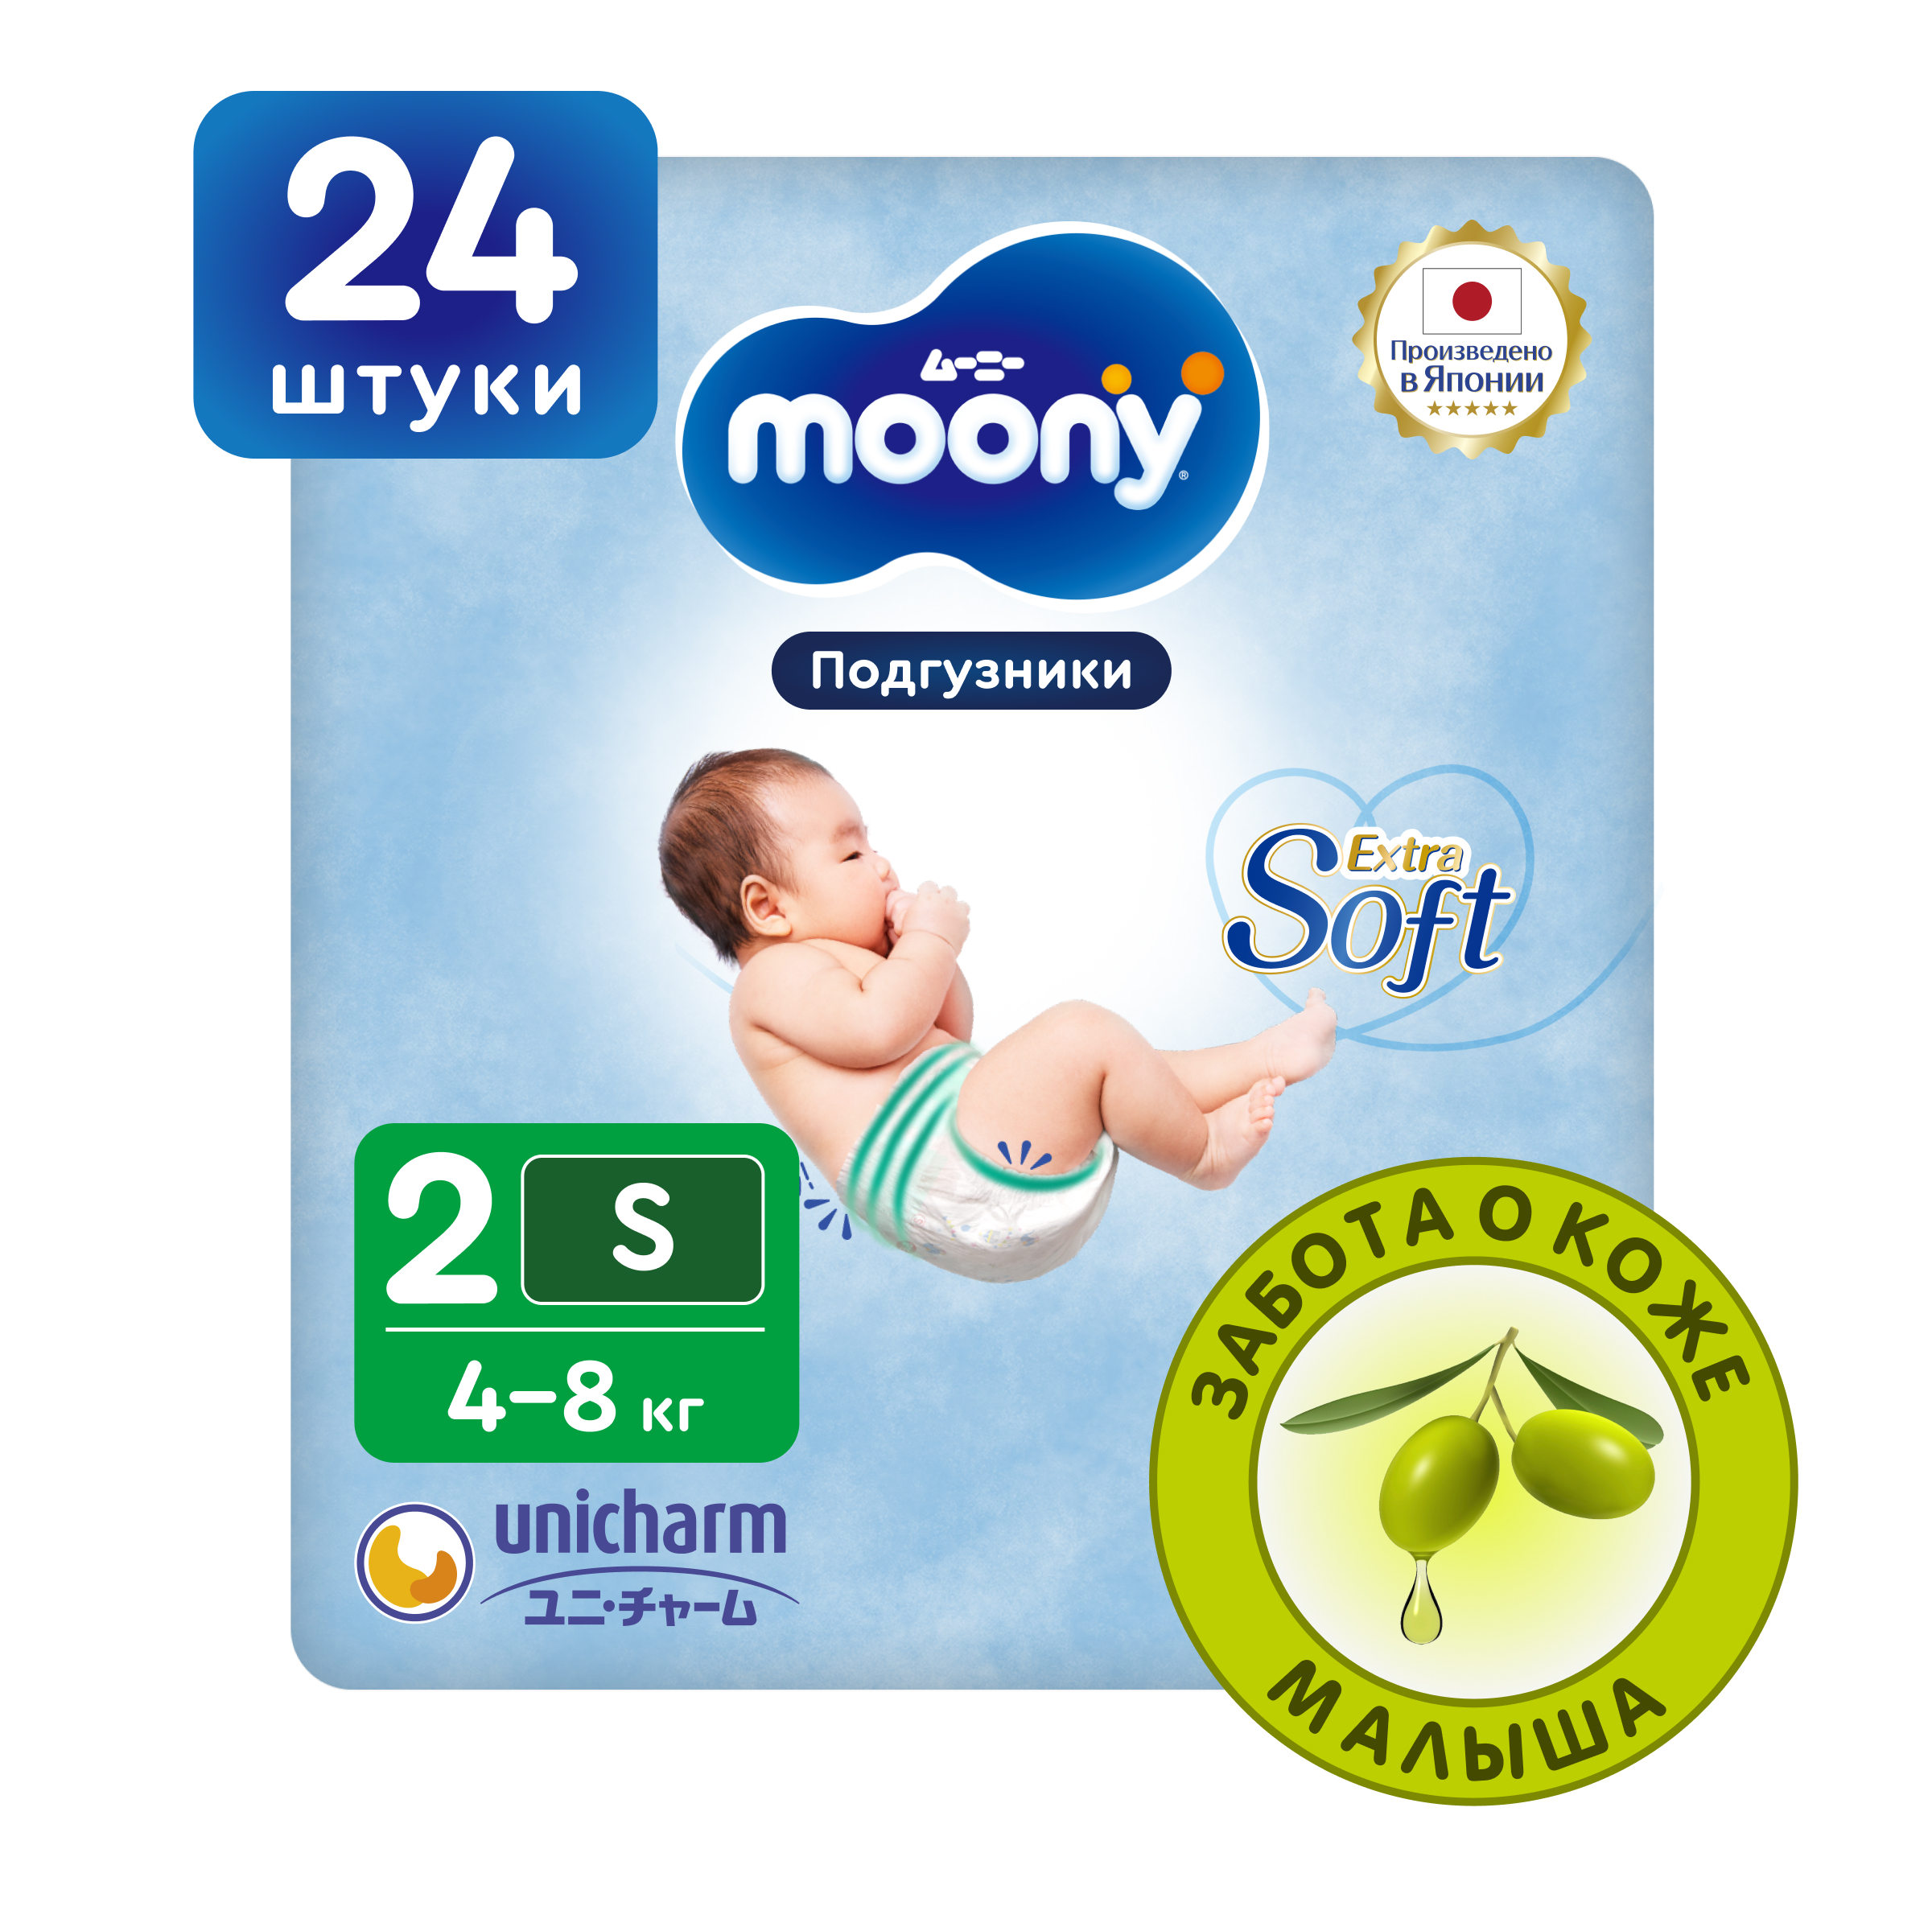 Японские подгузники для новорожденных Moony Extra Soft 2 S, 4-8 кг, 24 шт